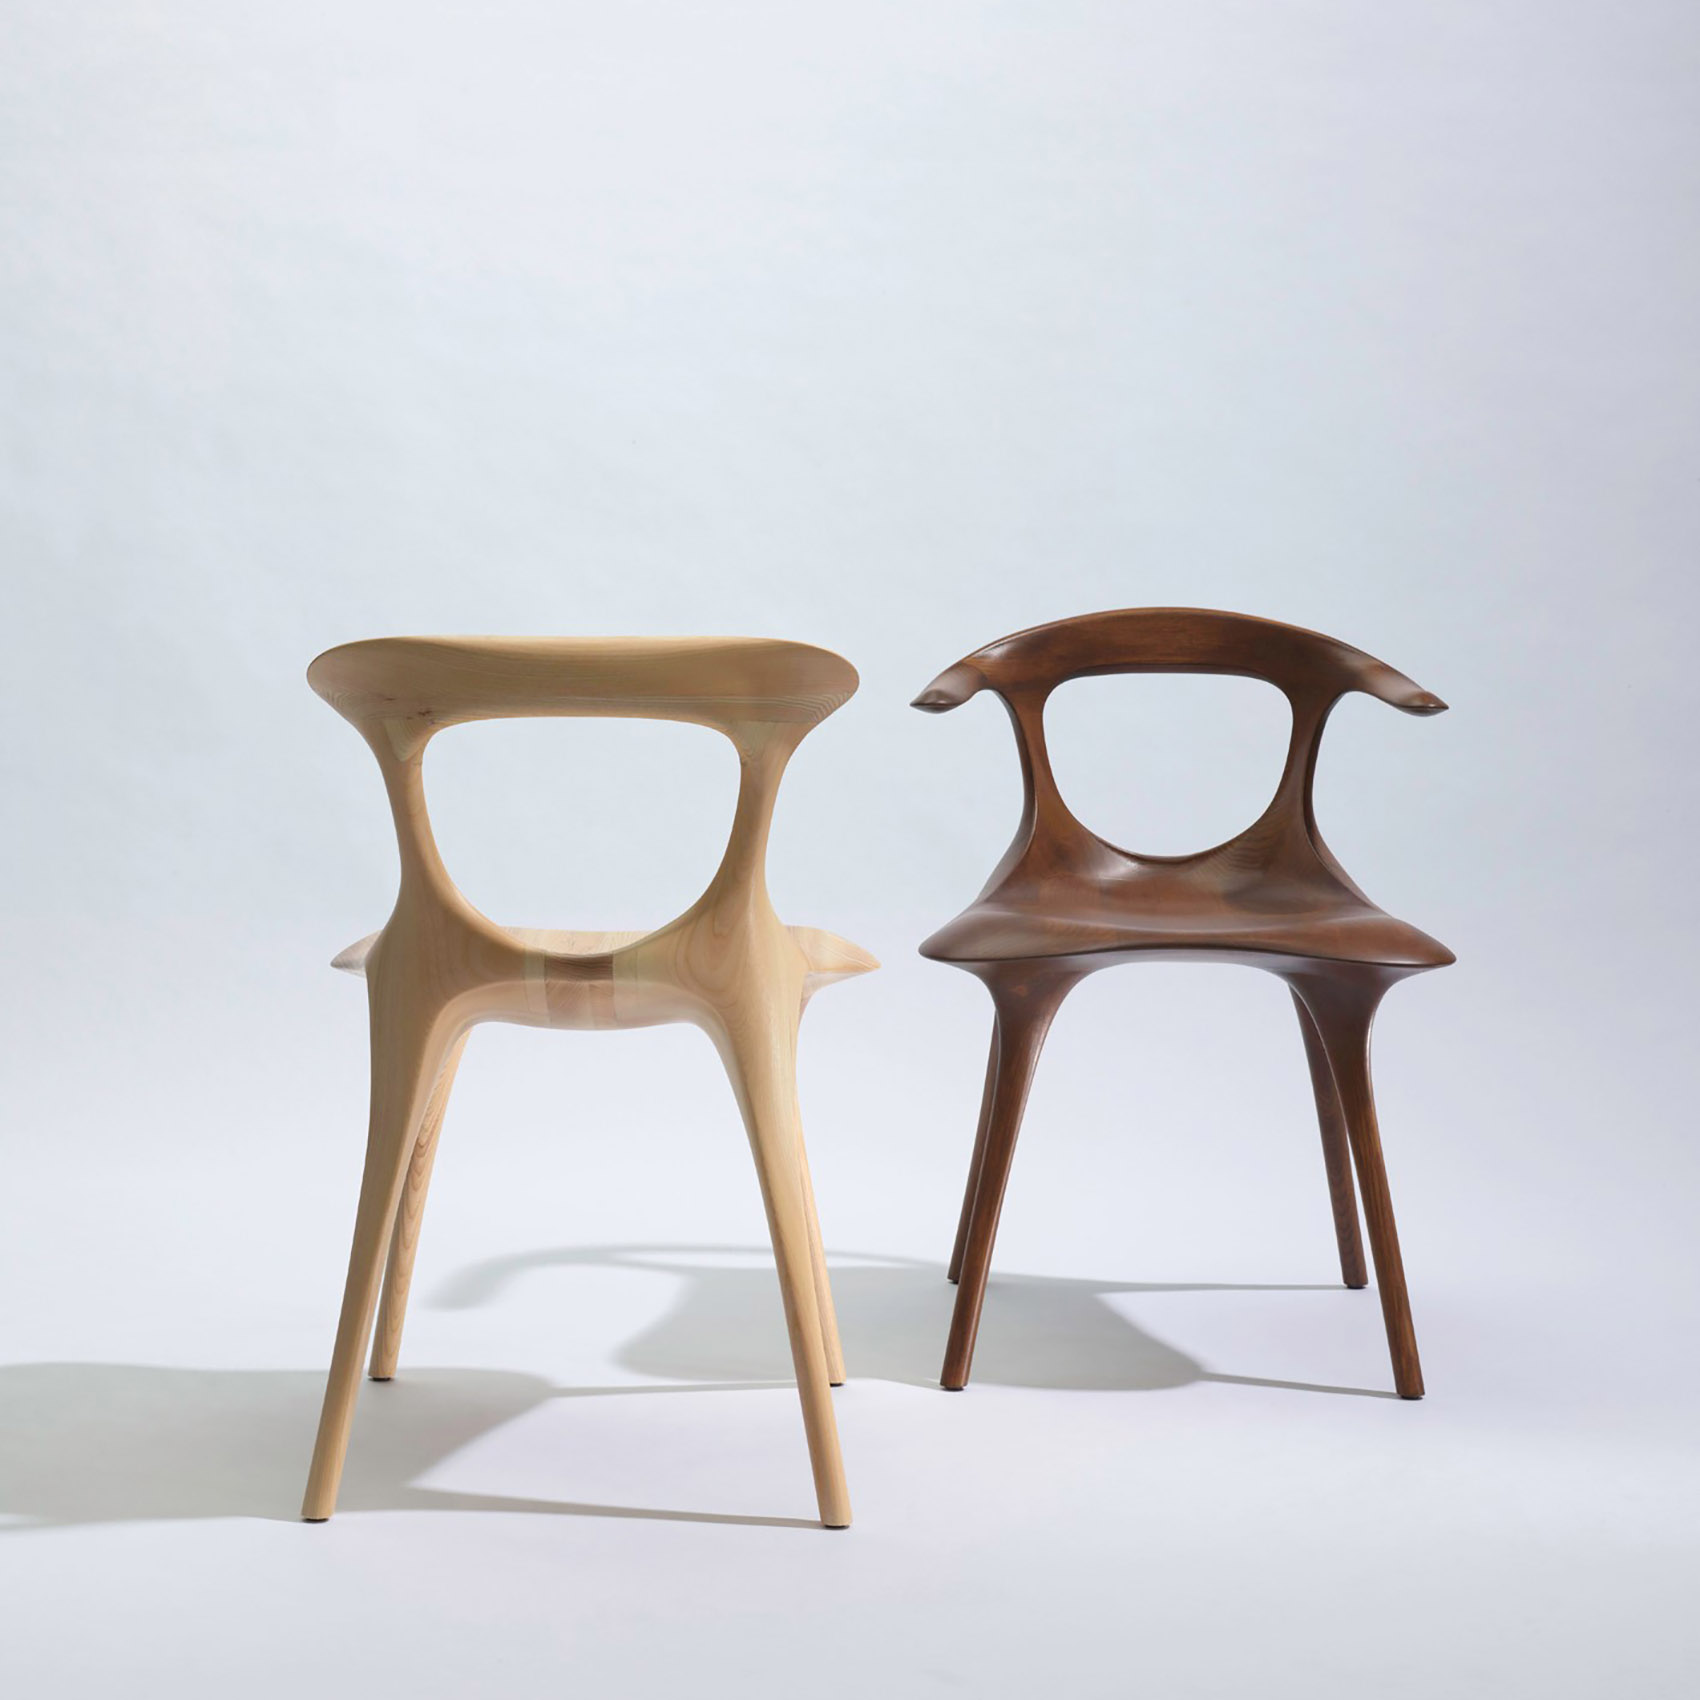 MAD携“骨椅”“平潭”“天镜”三件作品参展2018米兰设计周/有机自然的设计，与天地互动。-29